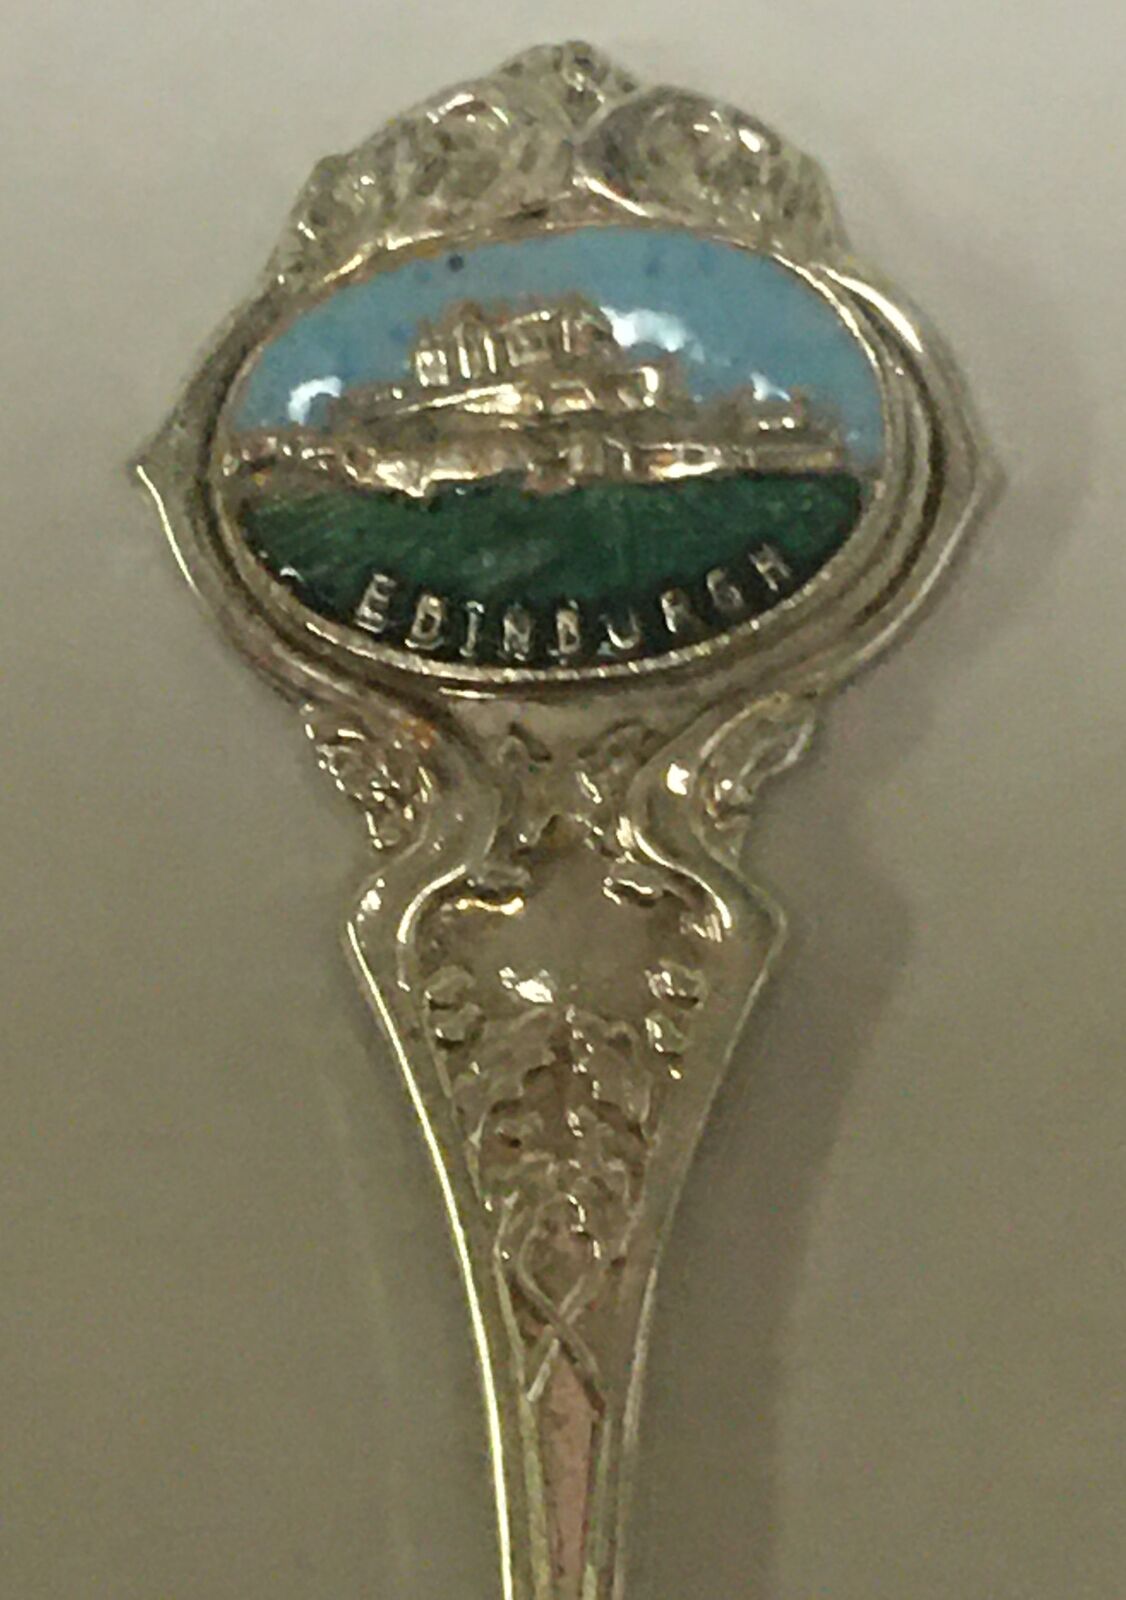 Edinburgh Scotland Vintage Souvenir Spoon Collectible